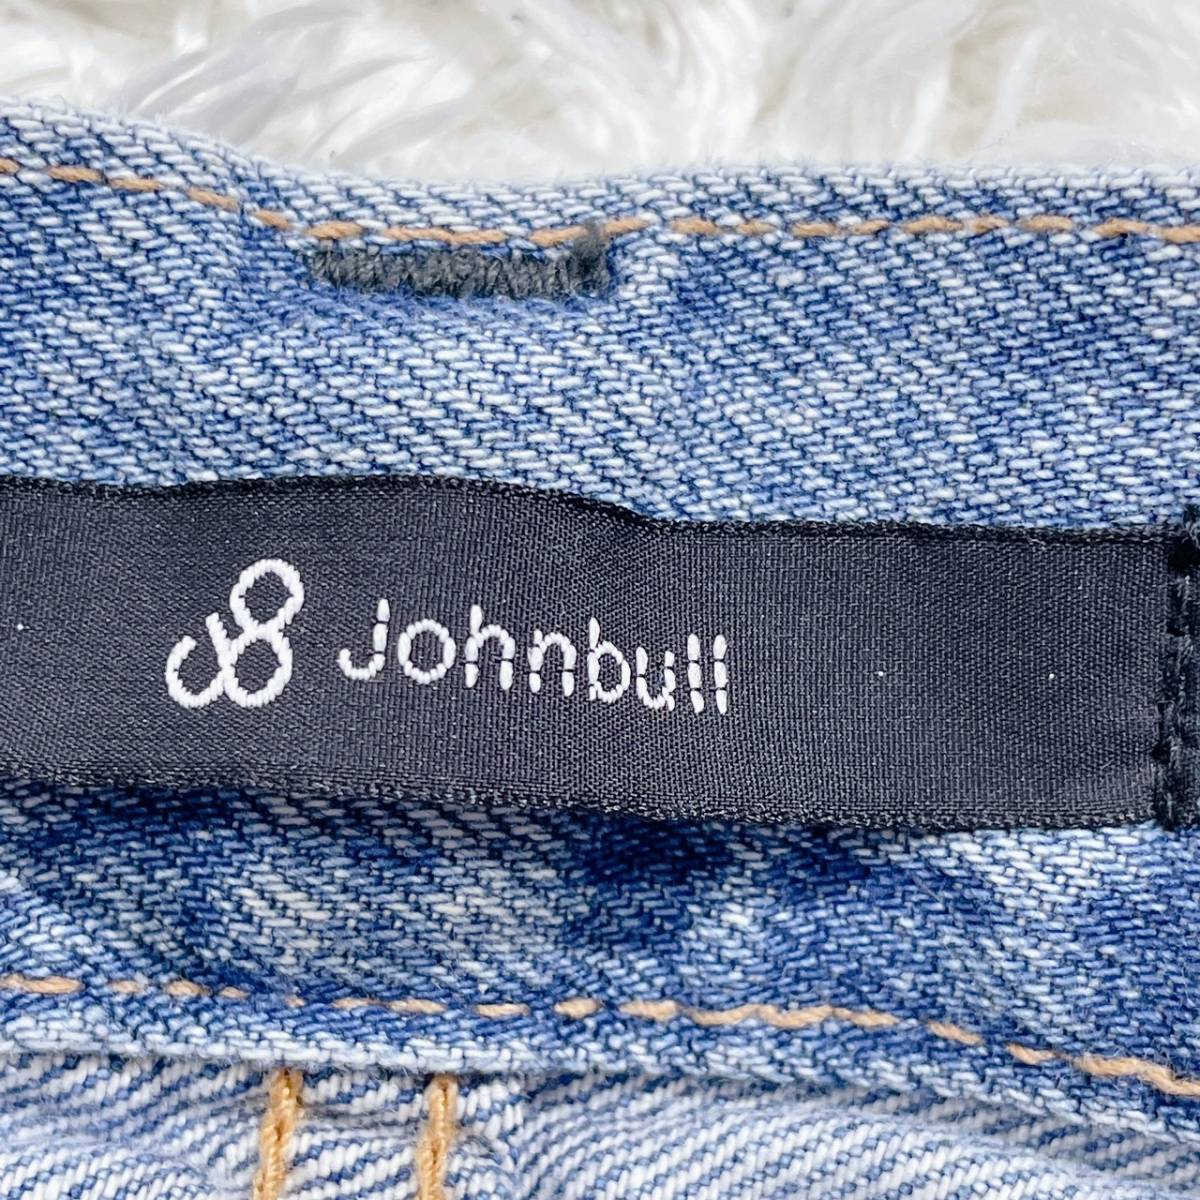 新品 未使用 メンズ 33 XL相当 Johnbull ボトムス ジーンズ ロングジーンズ ブルー デニム 飾りボタン 日本製 ジョンブル 【15900】